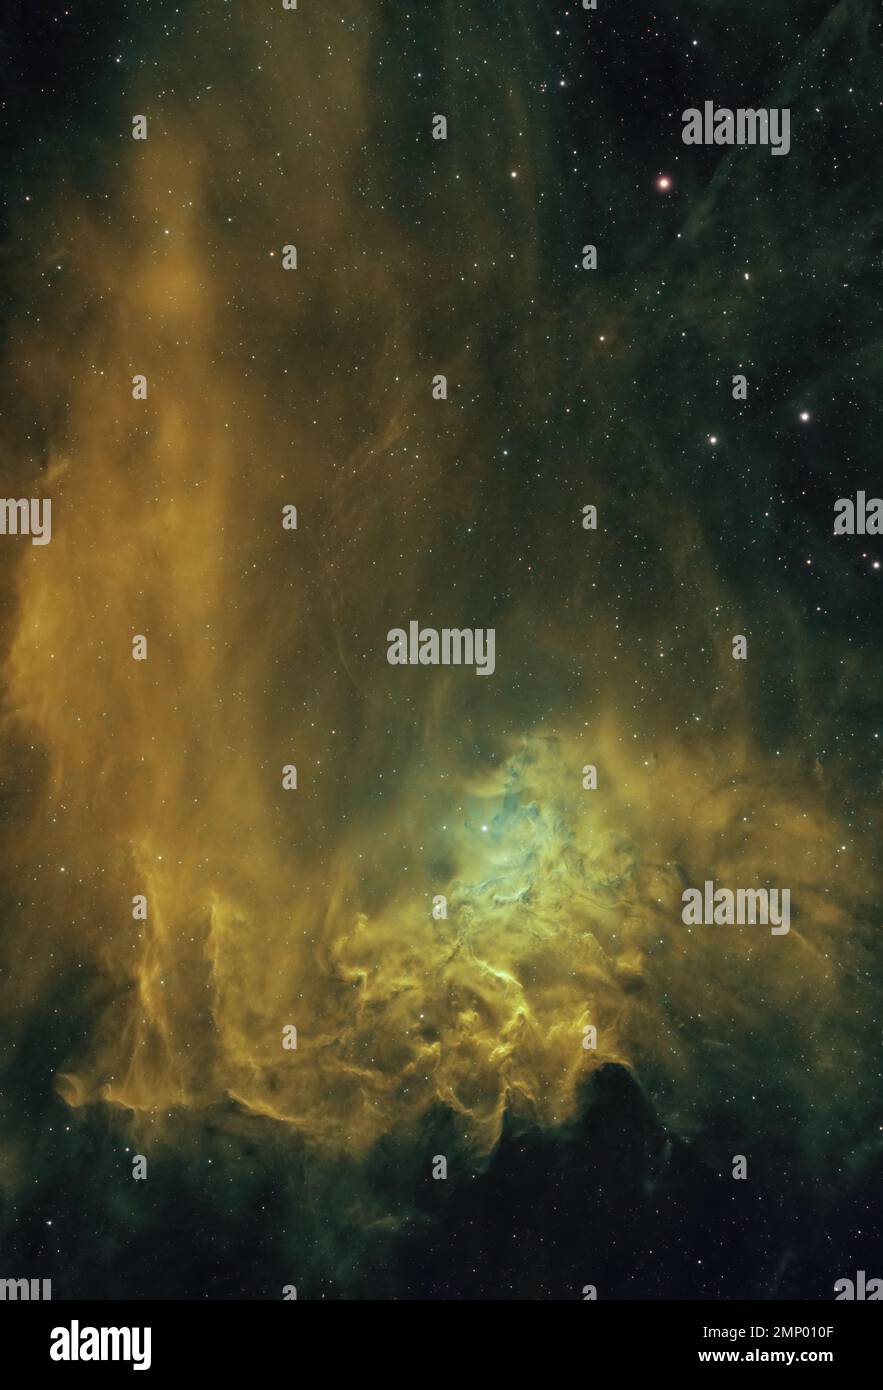 La nébuleuse étoile flamboyante (IC 405) située dans la constellation de l'Auriga, photographiée dans la palette Hubble du Royaume-Uni Banque D'Images